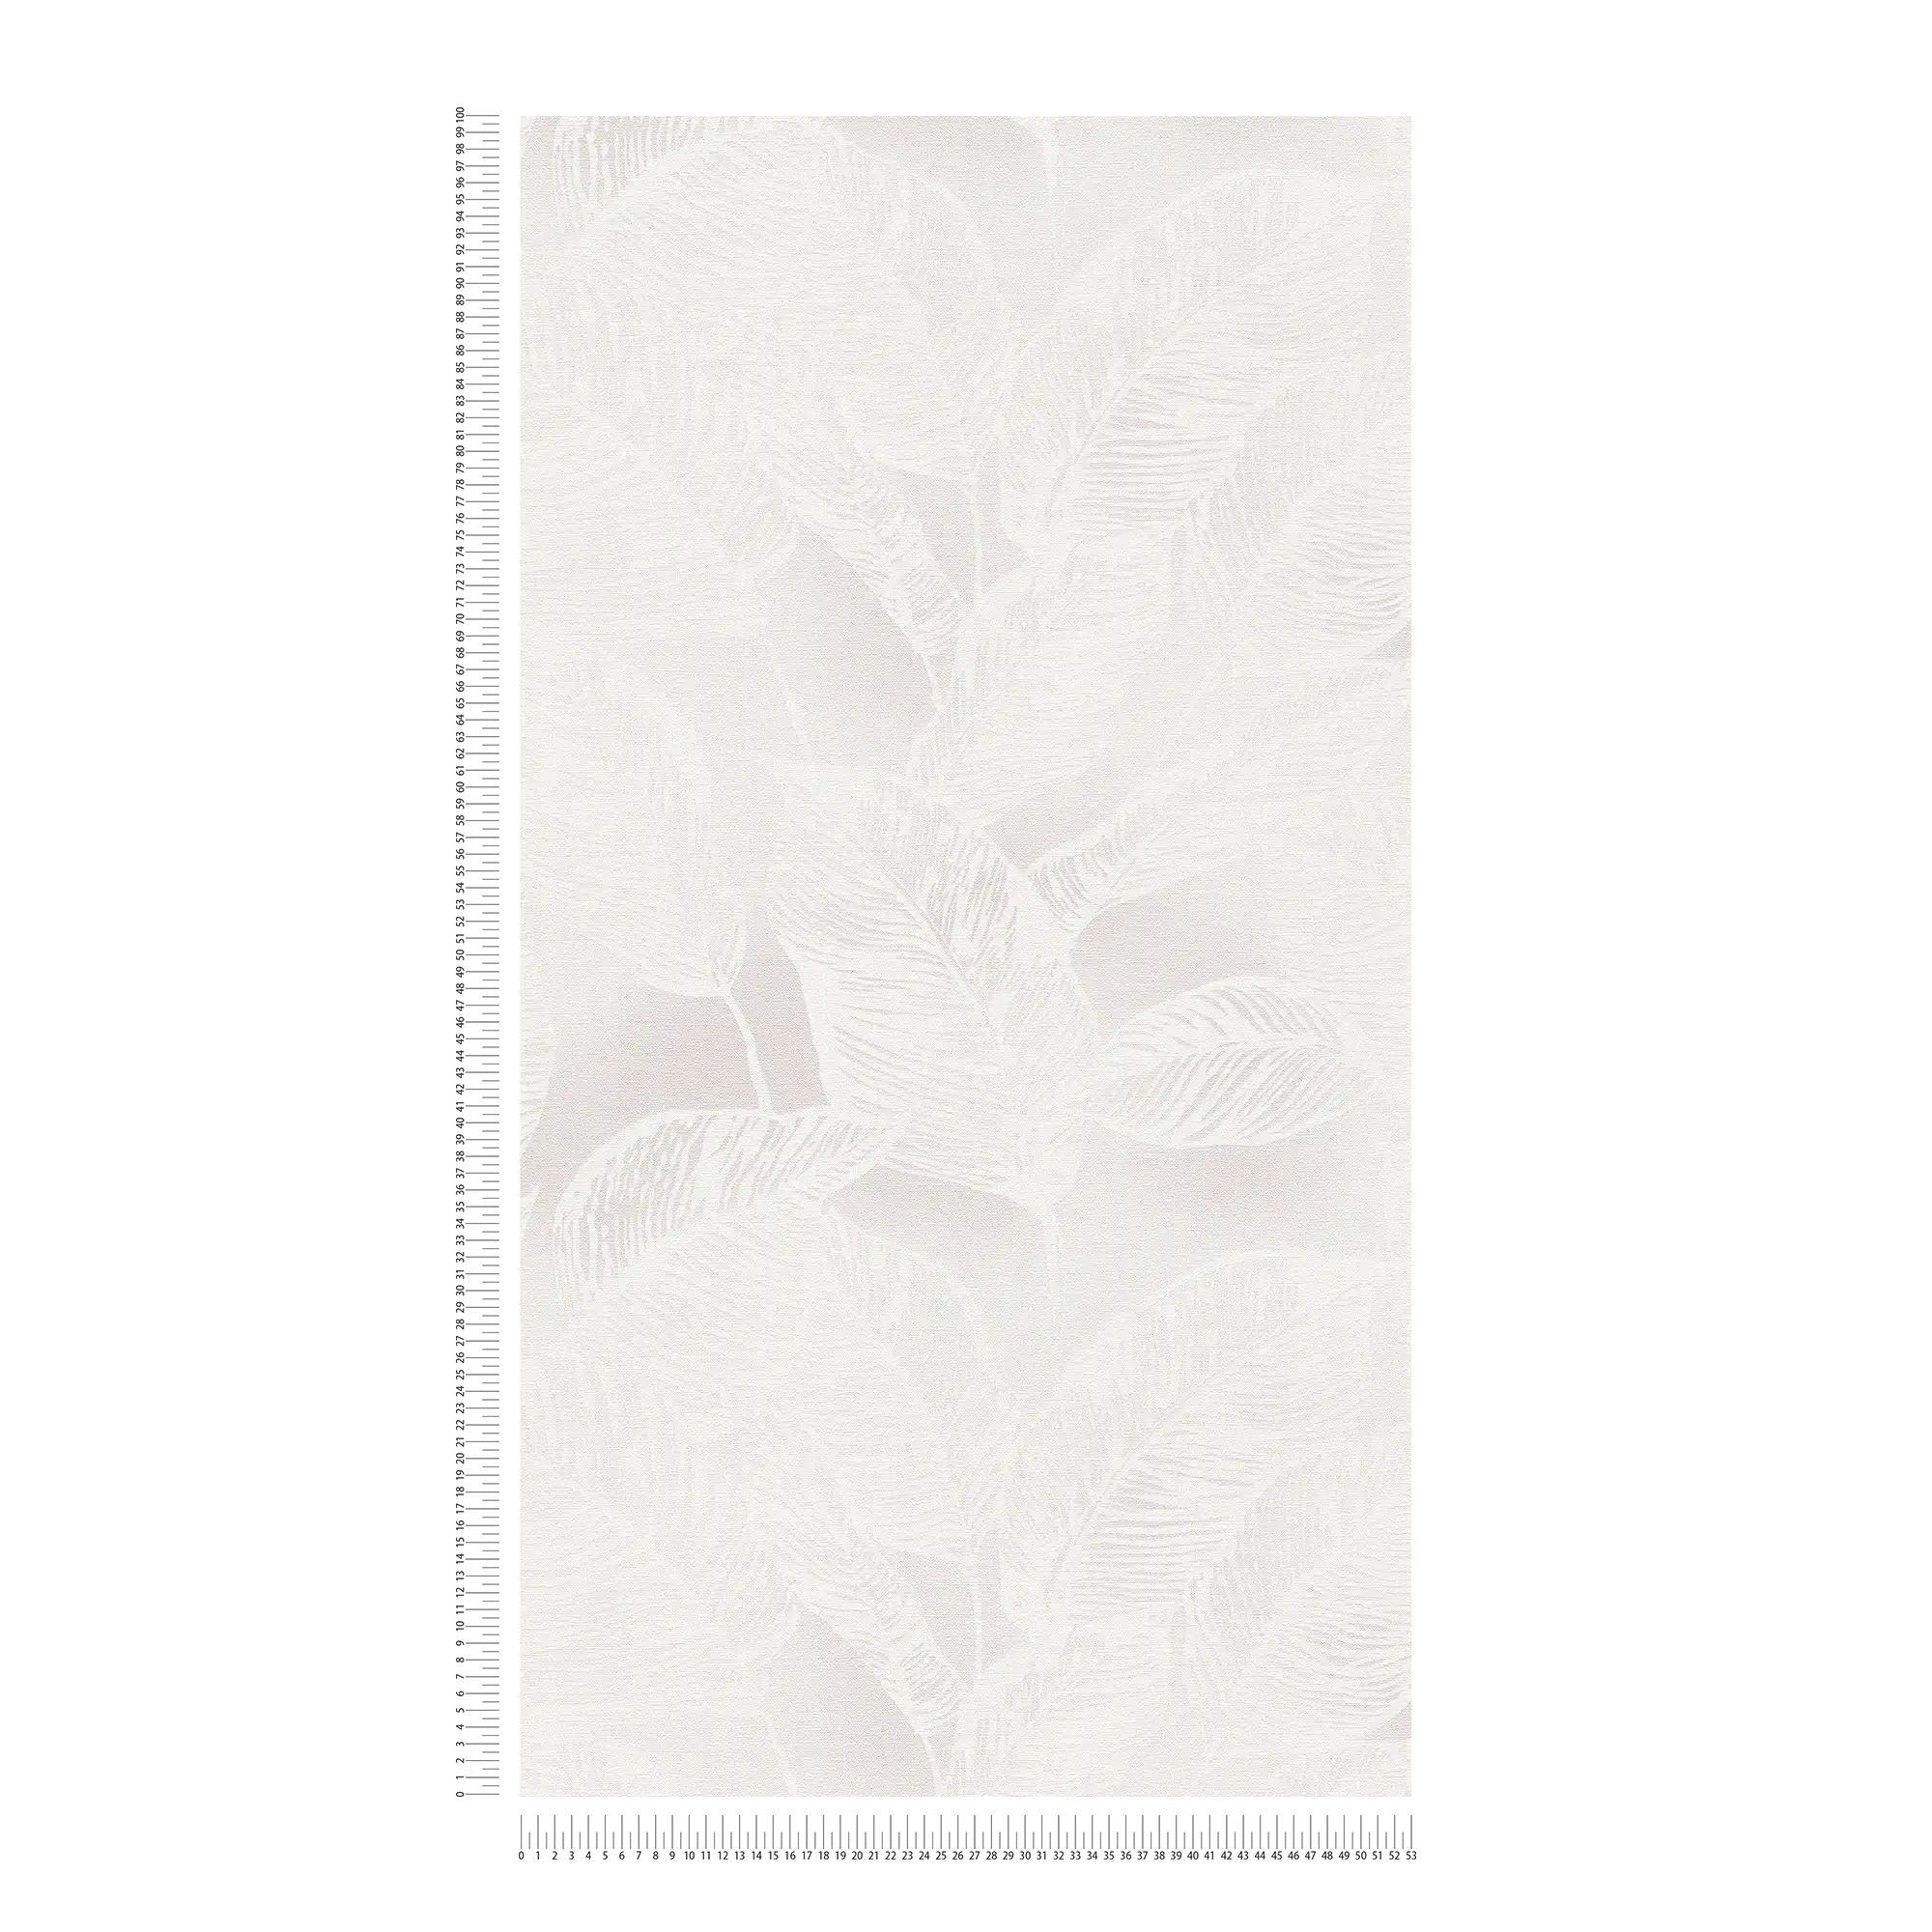             Carta da parati in tessuto non tessuto con foglie senza PVC - bianco, grigio
        